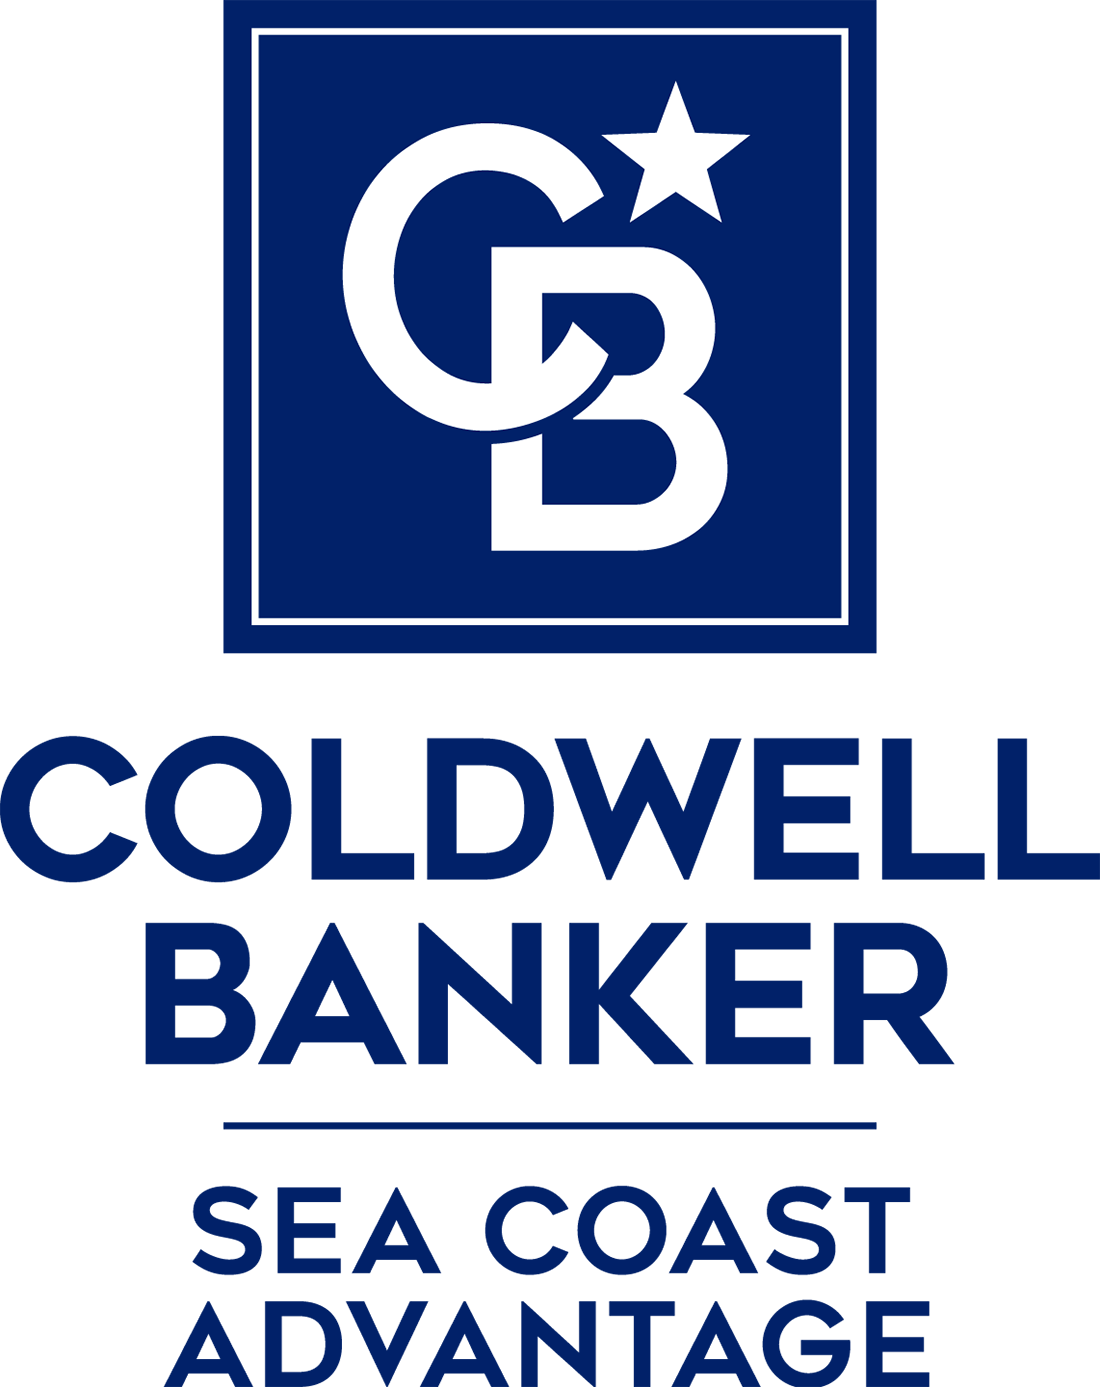 Madison Preble - Coldwell Banker Sea Coast Advantage Realty Logo